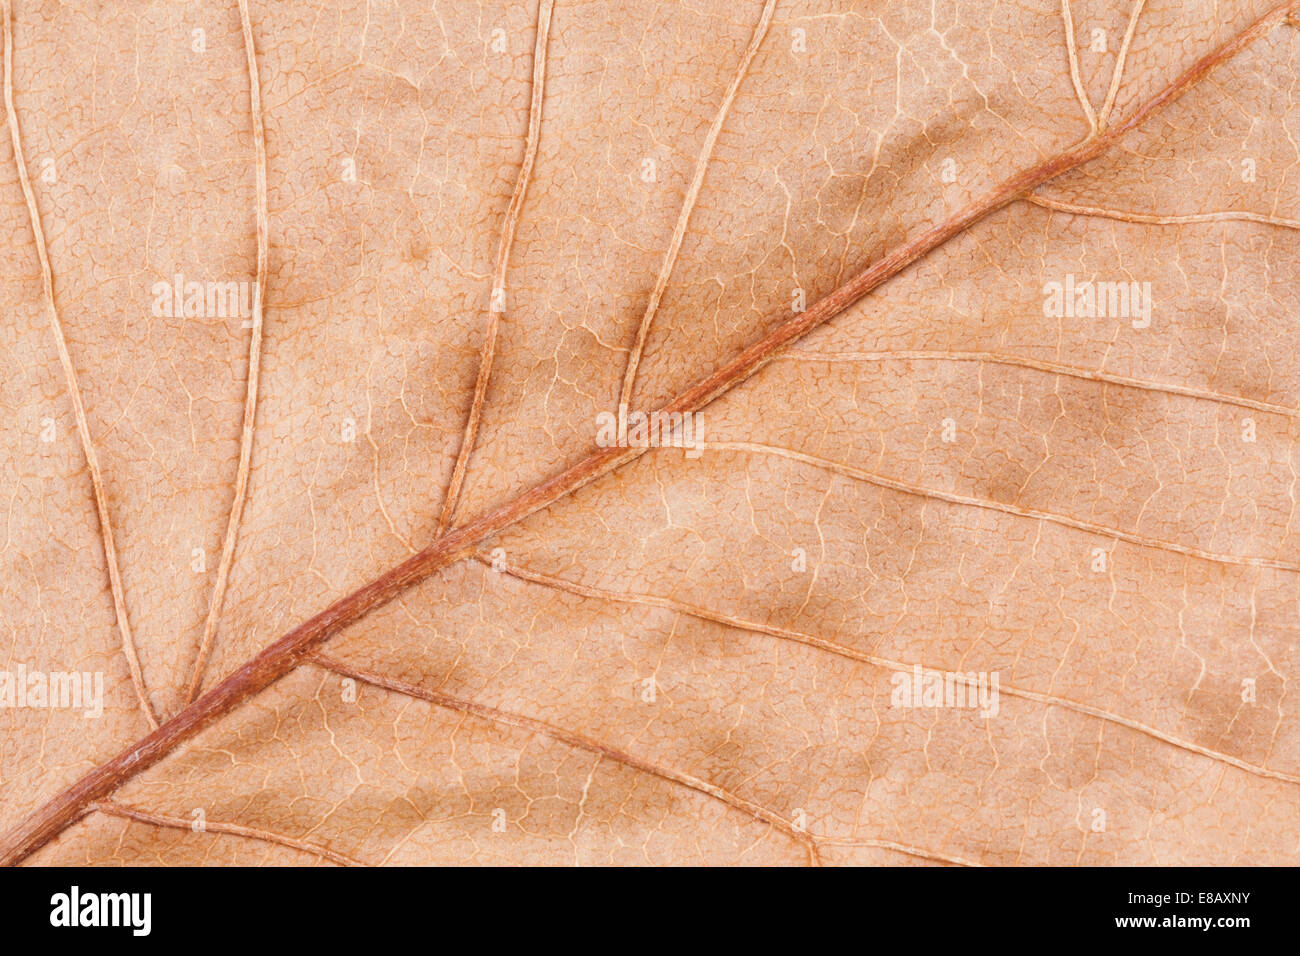 Una macro immagine di una vecchia foglia secca. La bei modelli delle vene sono visibili in questa premuta foglia. Foto Stock